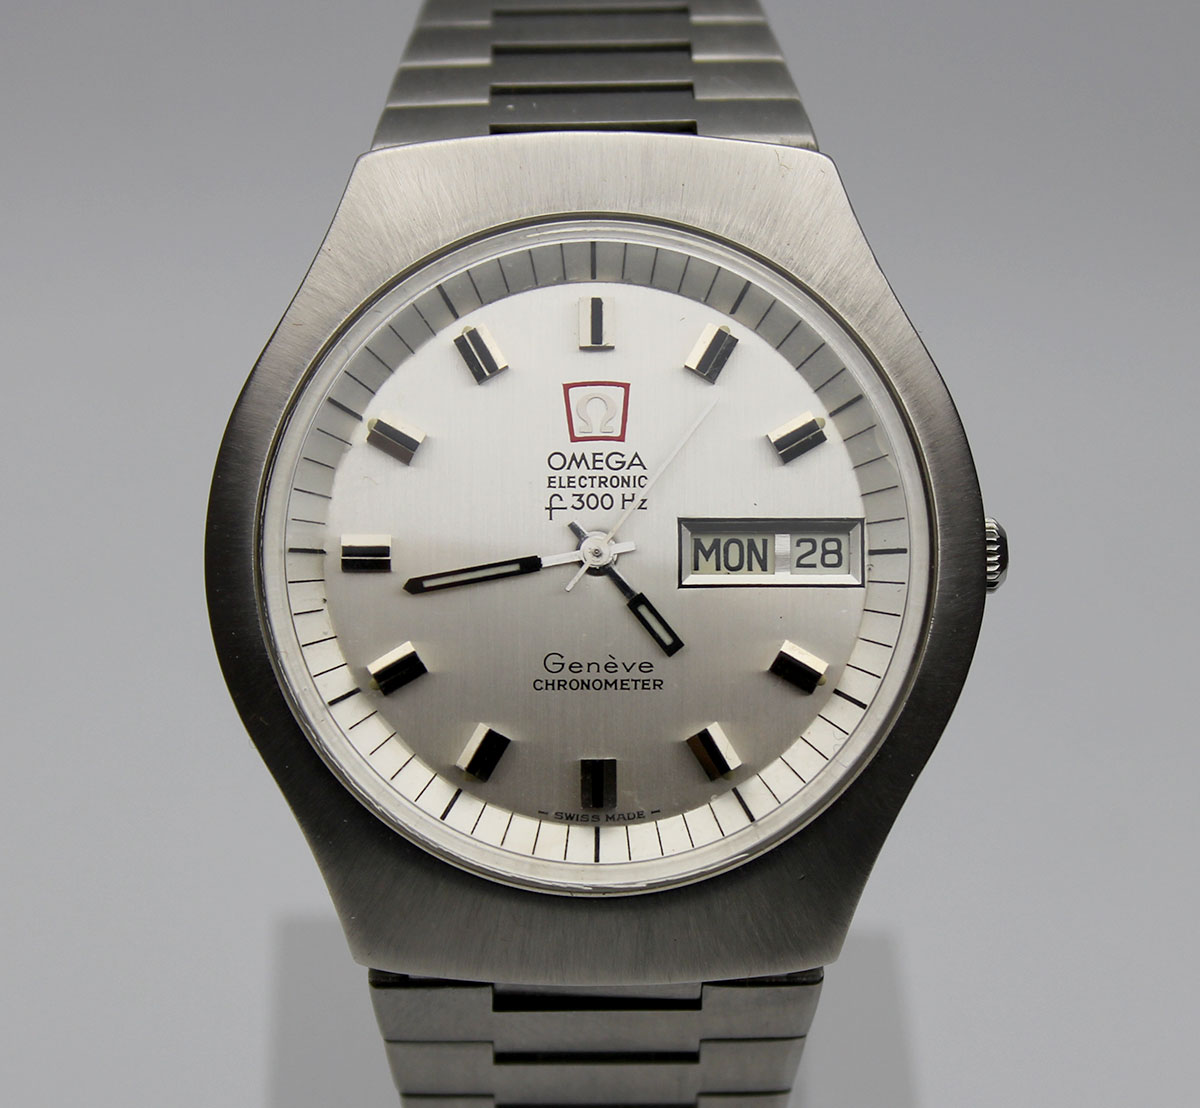 OMEGA ELECTRONIC F300 Chronometer 70er Jahre